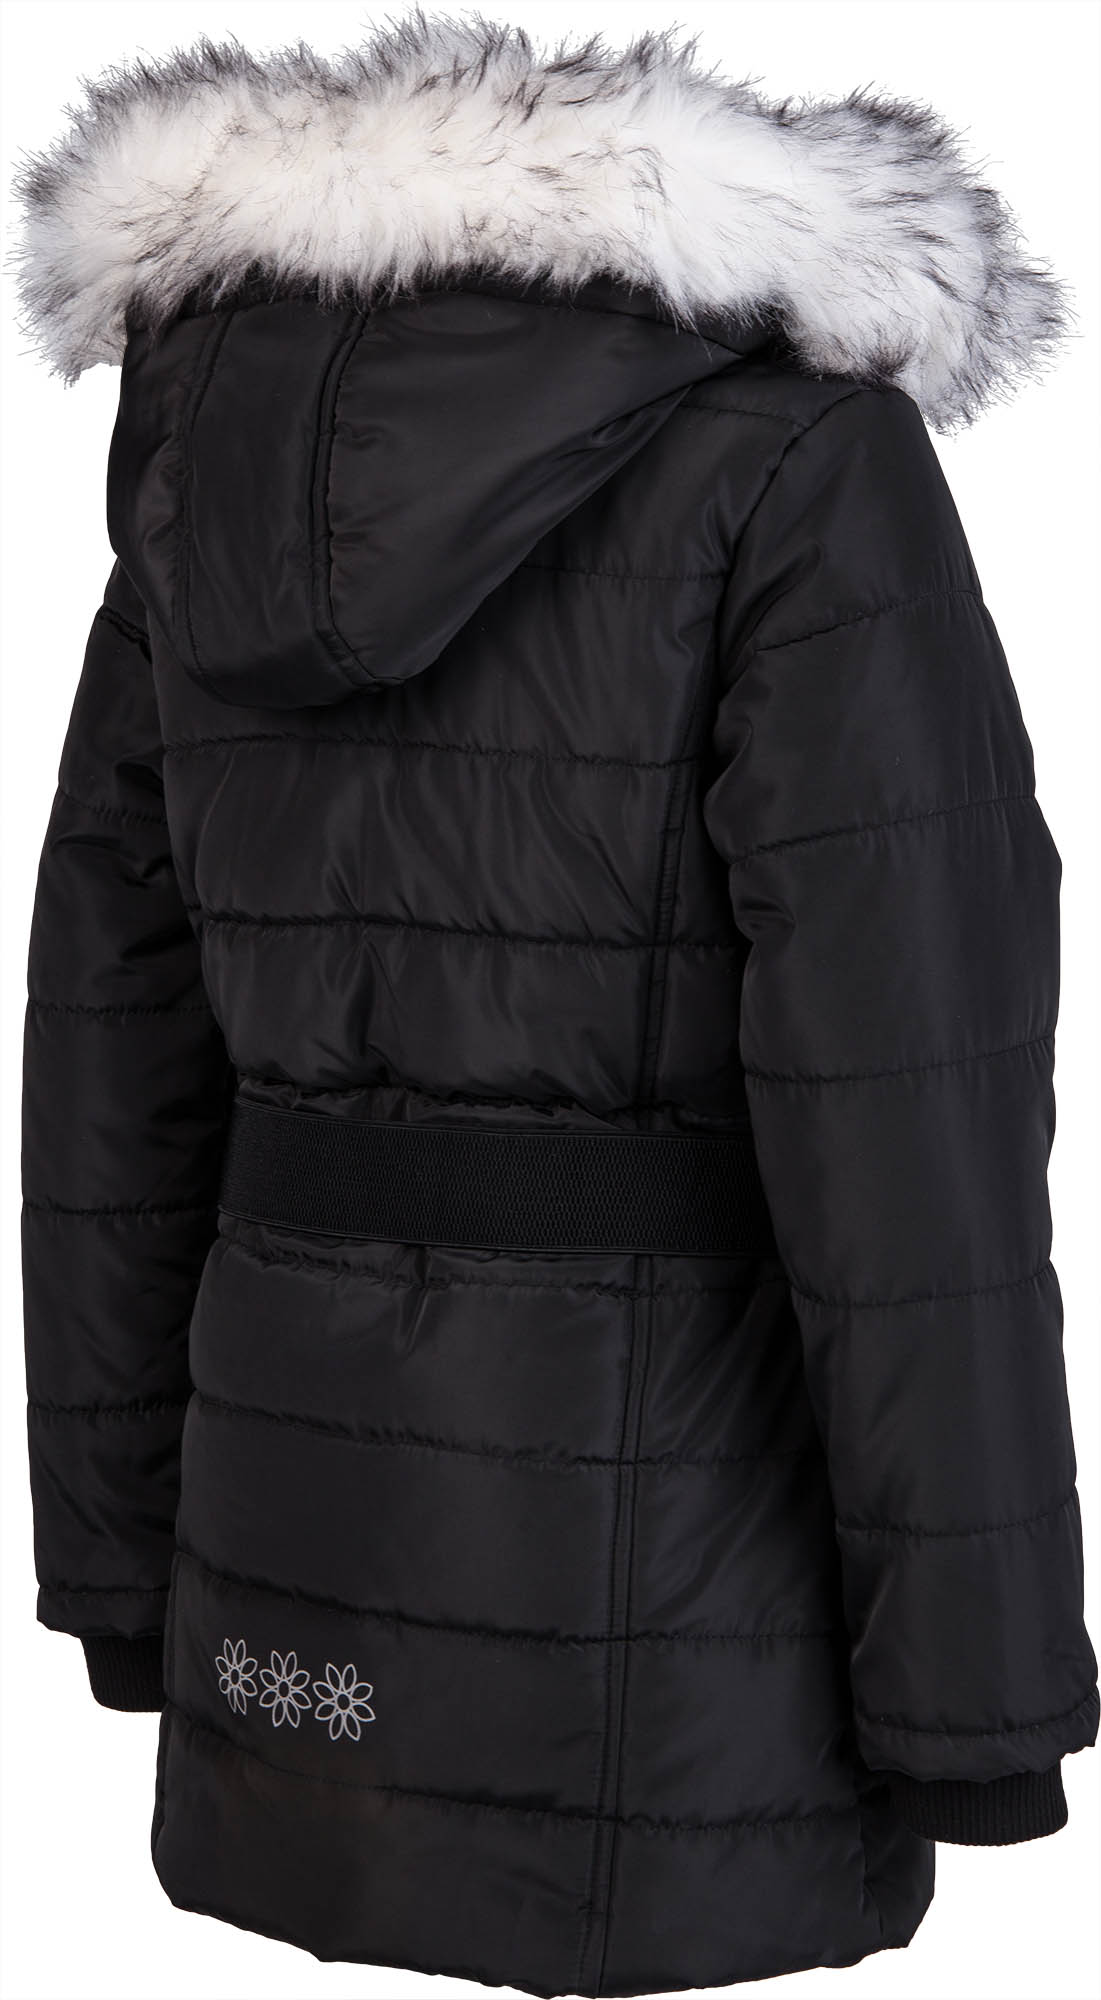 Dievčenský zimný kabát